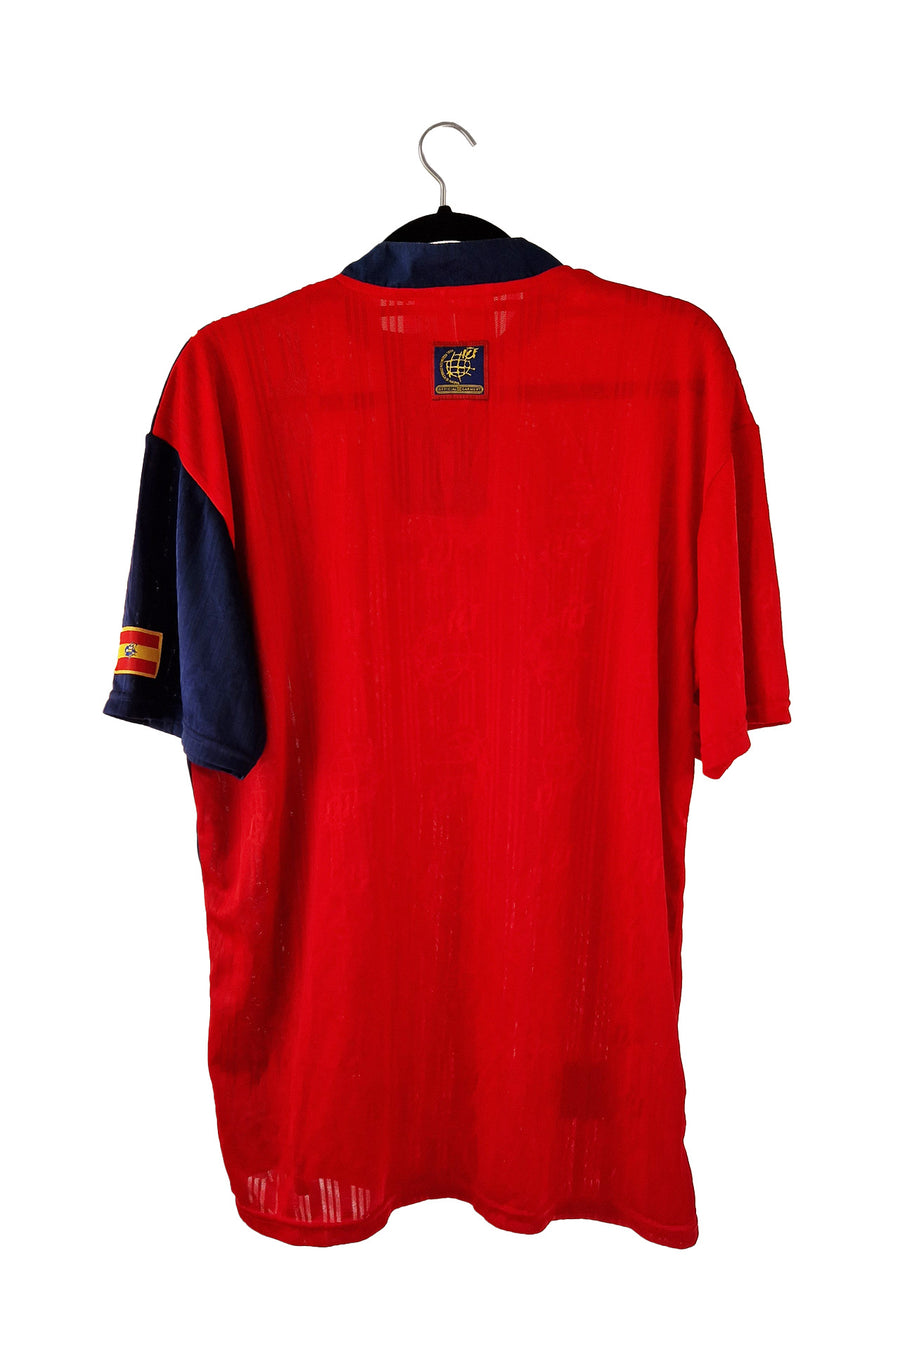 Spain 1994 - 1996 Home Football Shirt